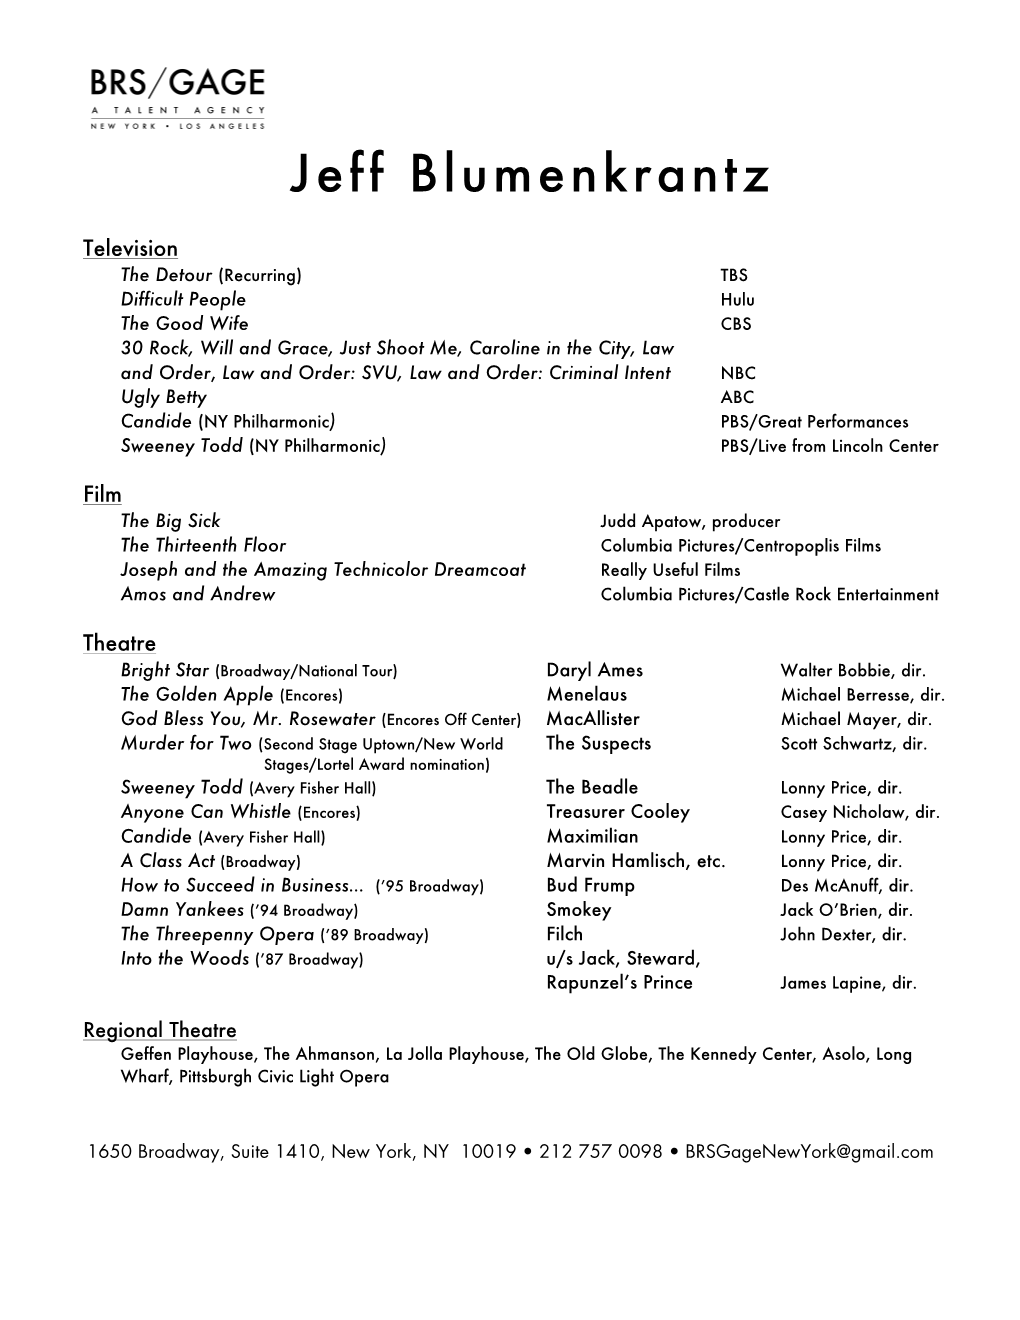 Jeff Blumenkrantz